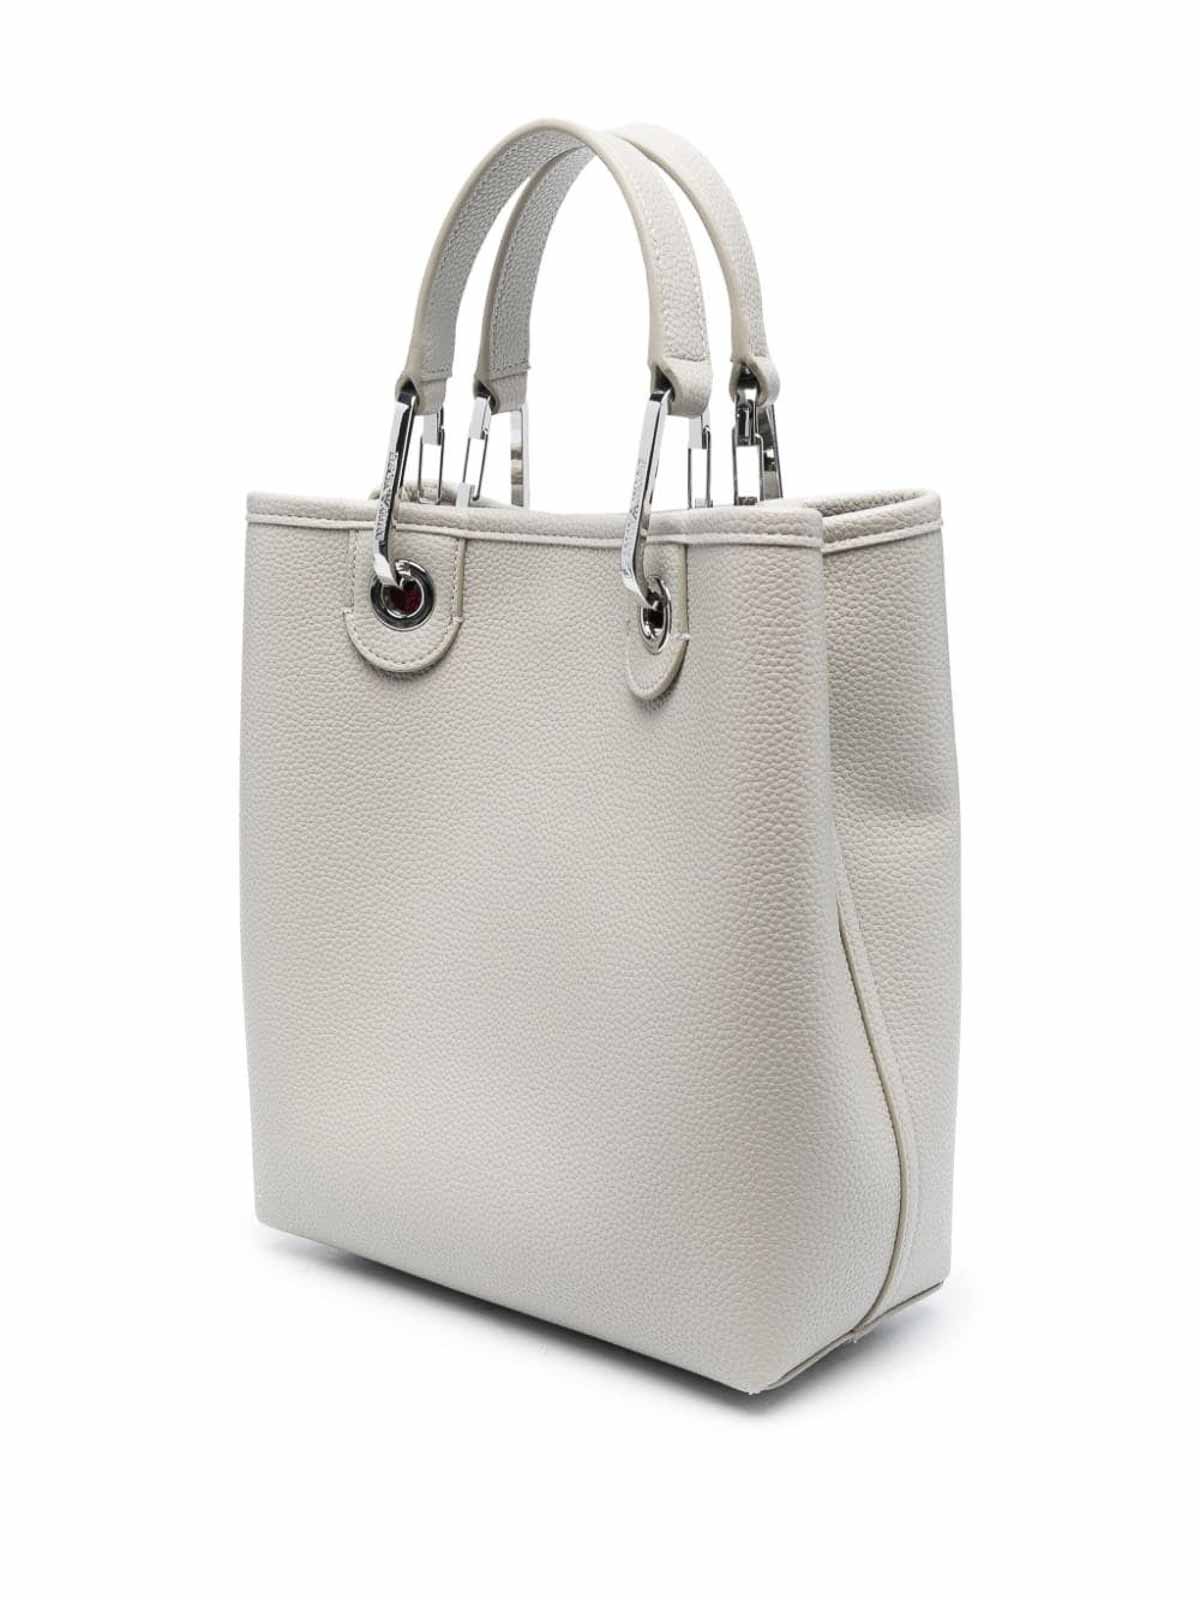 Emporio Armani women crossbody bags black - silver: Handbags